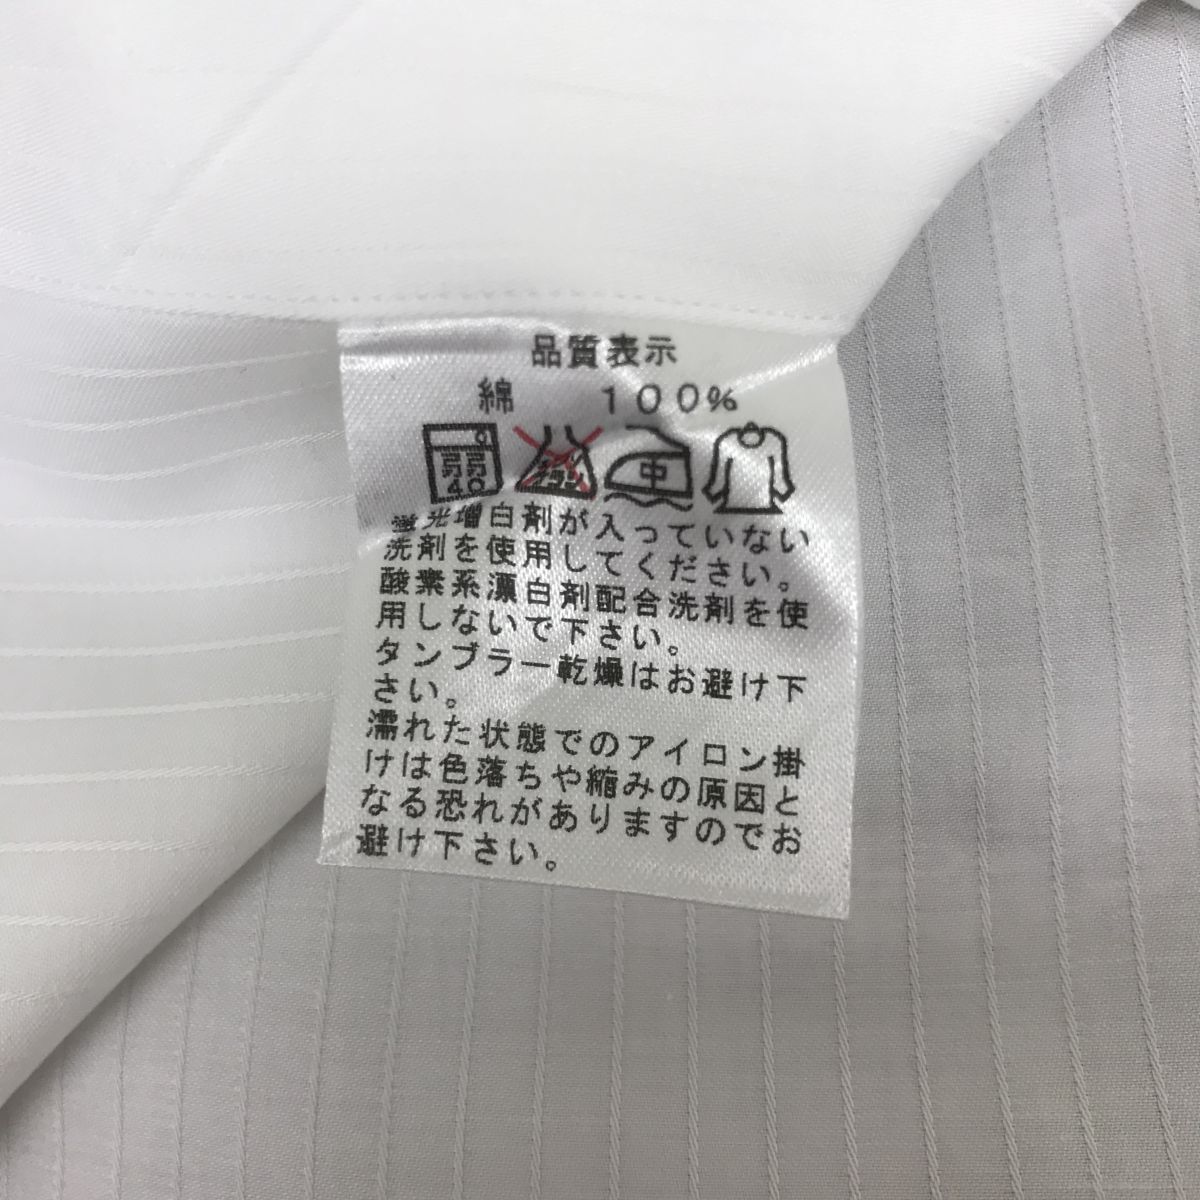 A2578-G◆Maker's Shirt鎌倉 メーカーズシャツカマクラ ワイシャツ◆綿100% 日本製 ホワイト 無地 メンズ トップス 長袖 ストライプ スーツの画像10